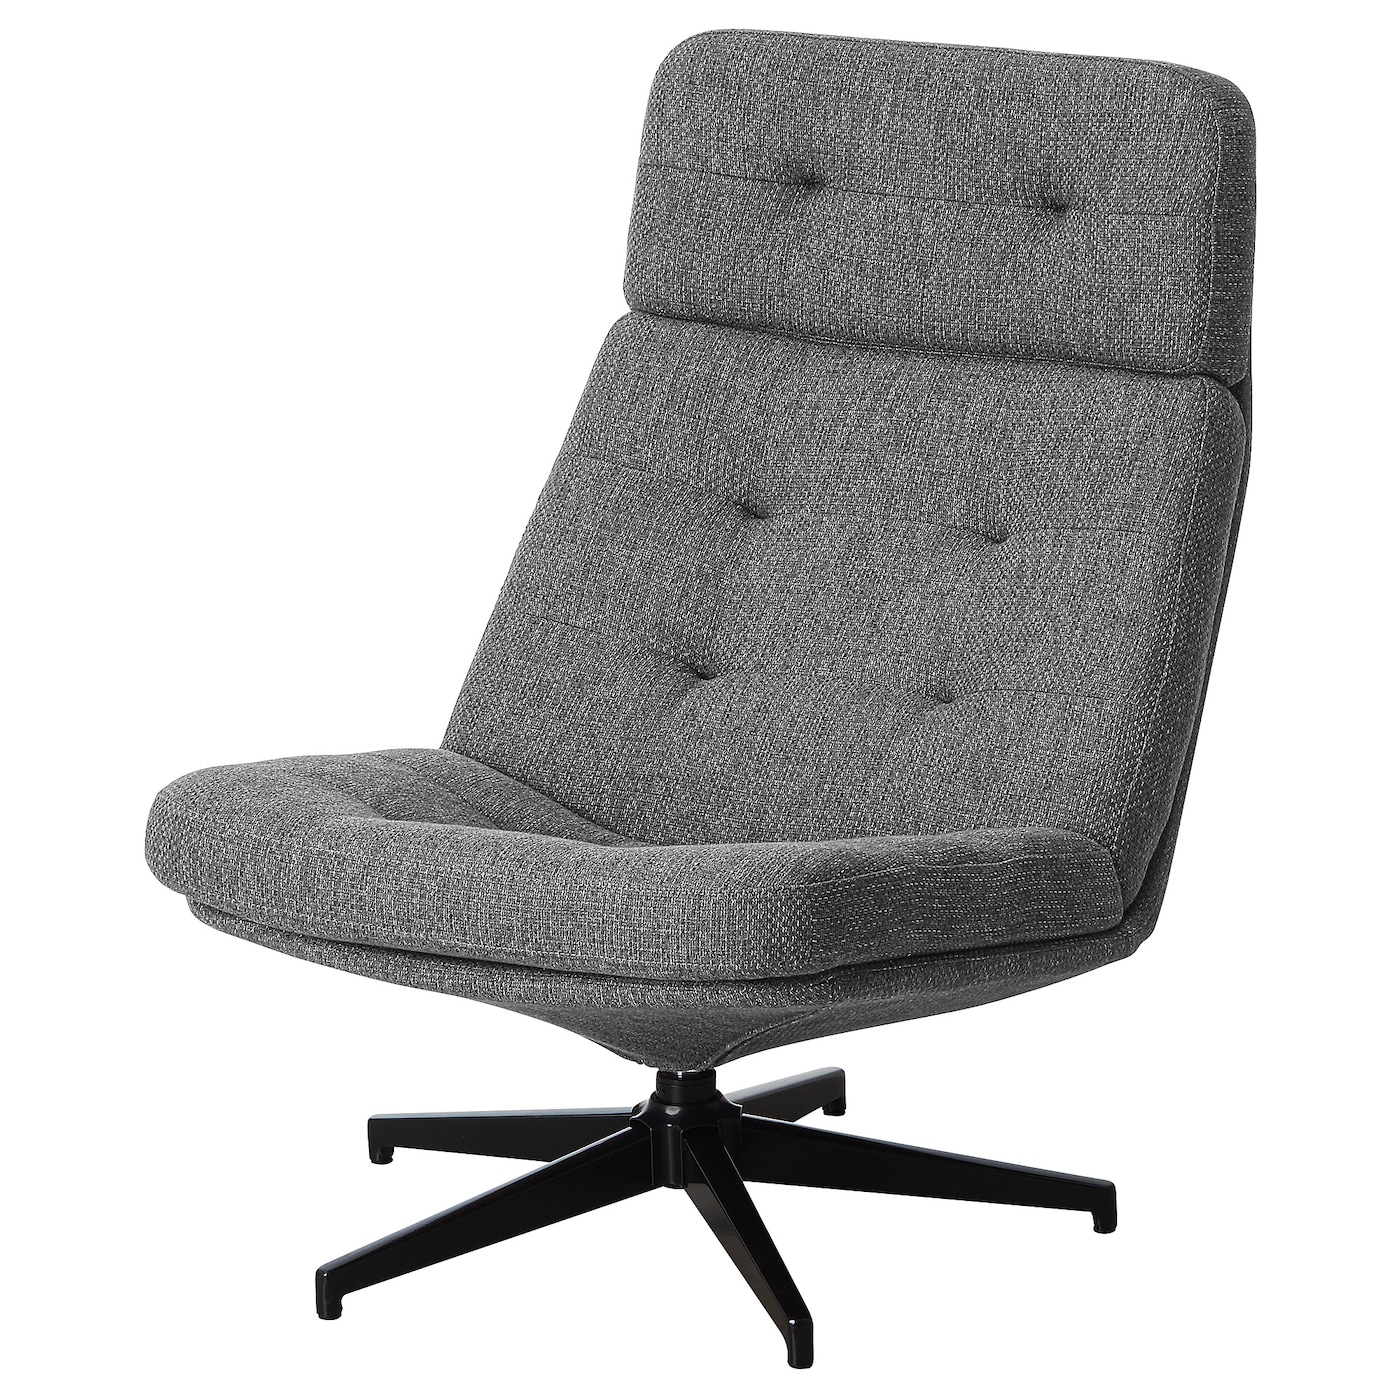 ХАВБЕРГ Вращающееся кресло, Лейде серый/черный HAVBERG IKEA